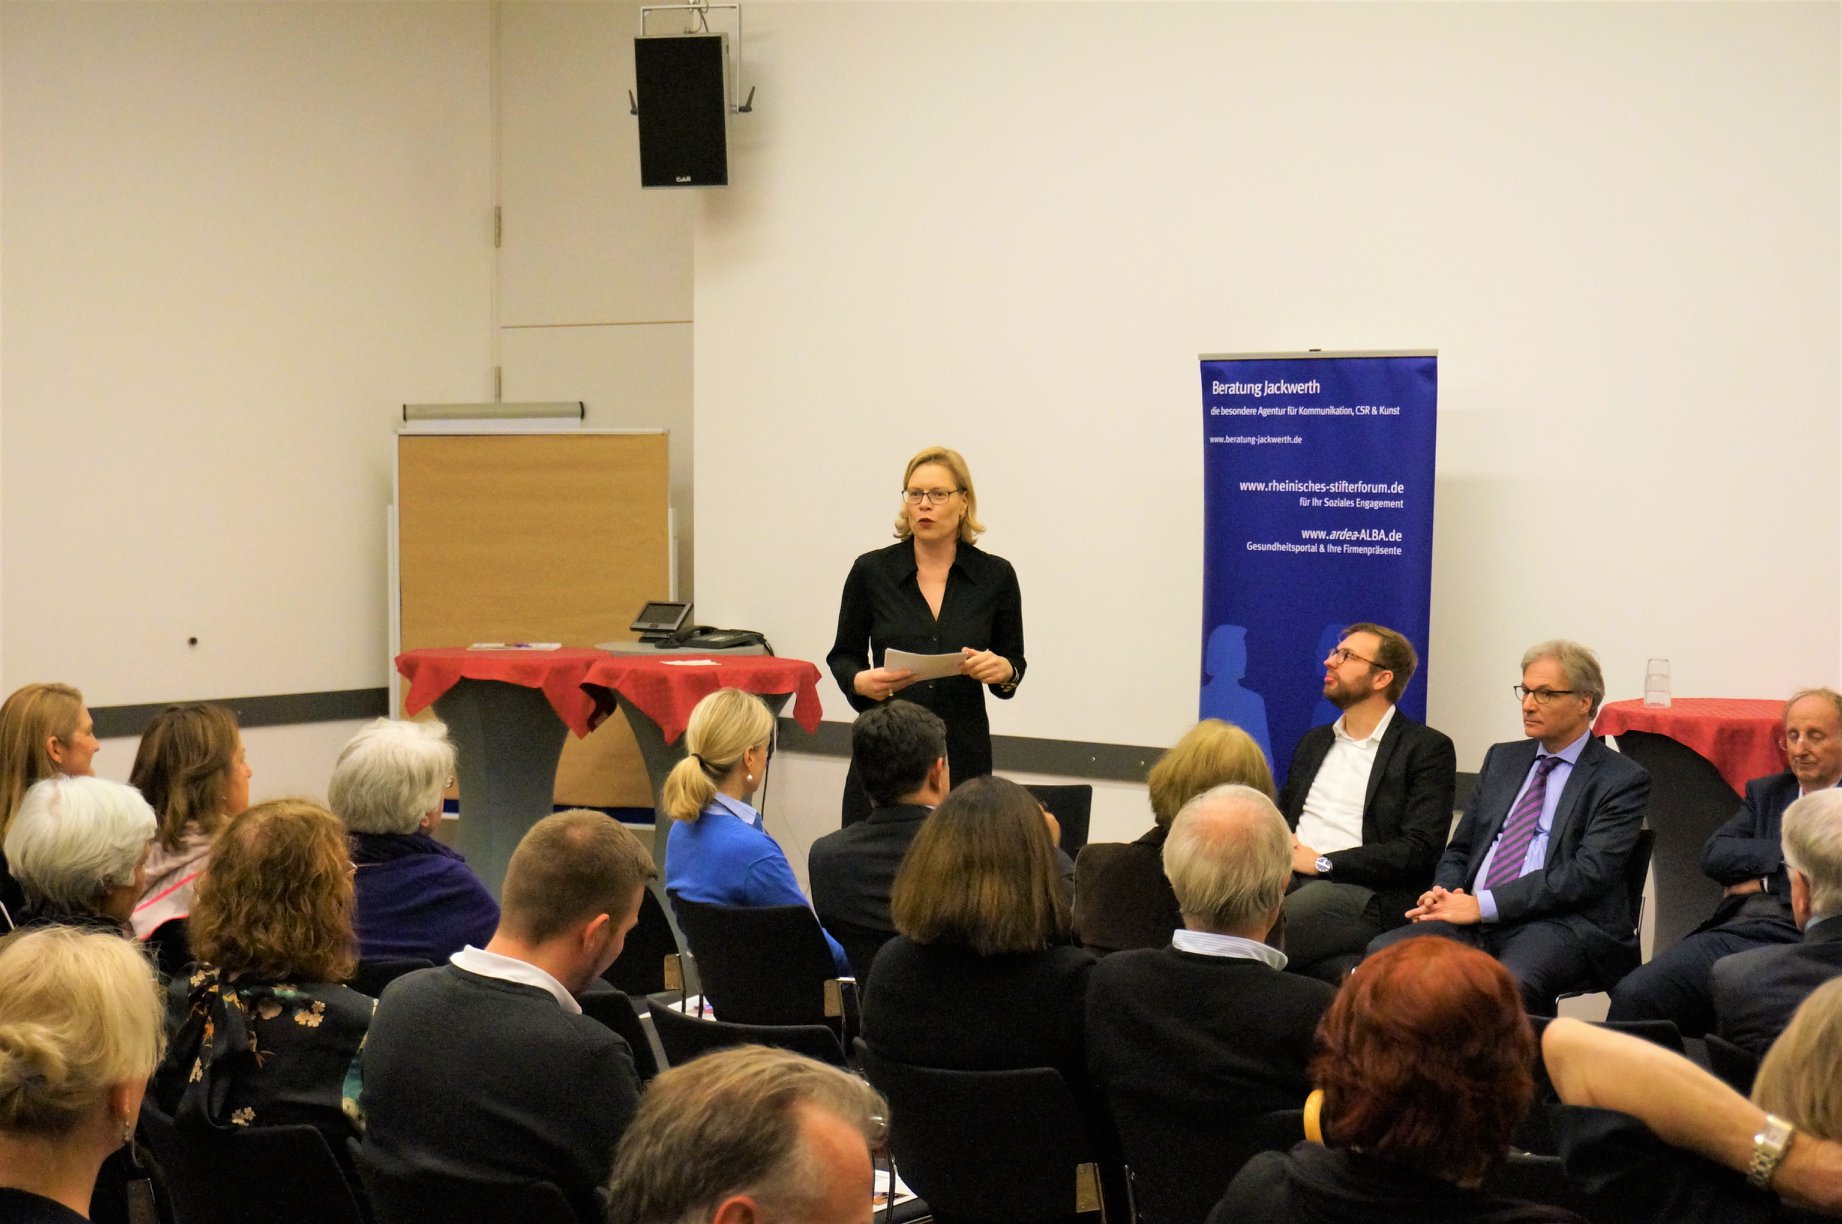 Rechtsanwältin Maren Jackwerth als Moderatorin beim Rheinischen Stifterforum seit 2012